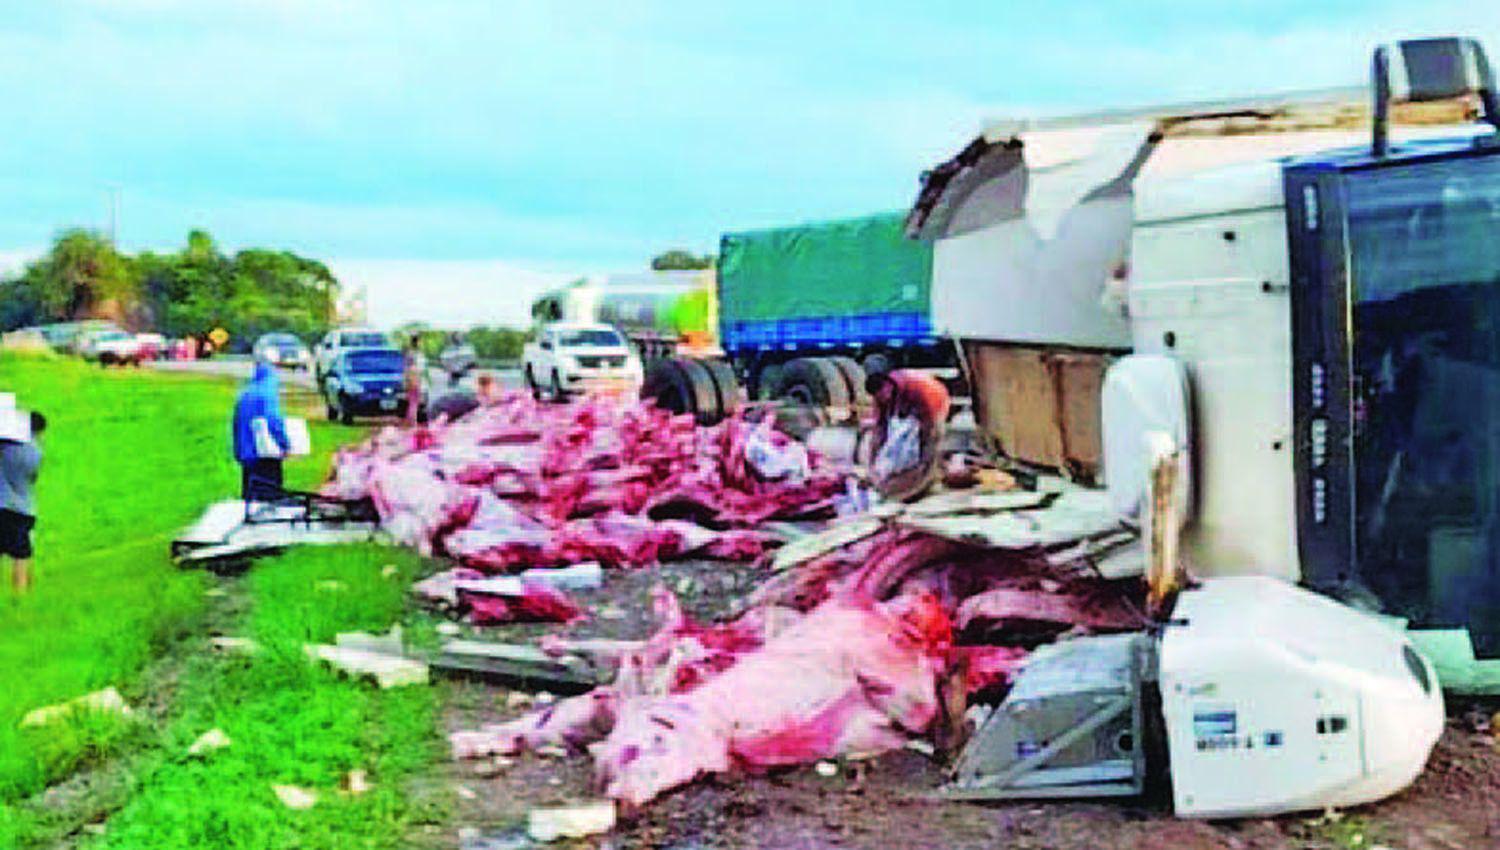 Ladrones lugarentildeos saquearon un camioacuten que llevaba 23000 kilos de carne del frigoriacutefico Forres-Beltraacuten